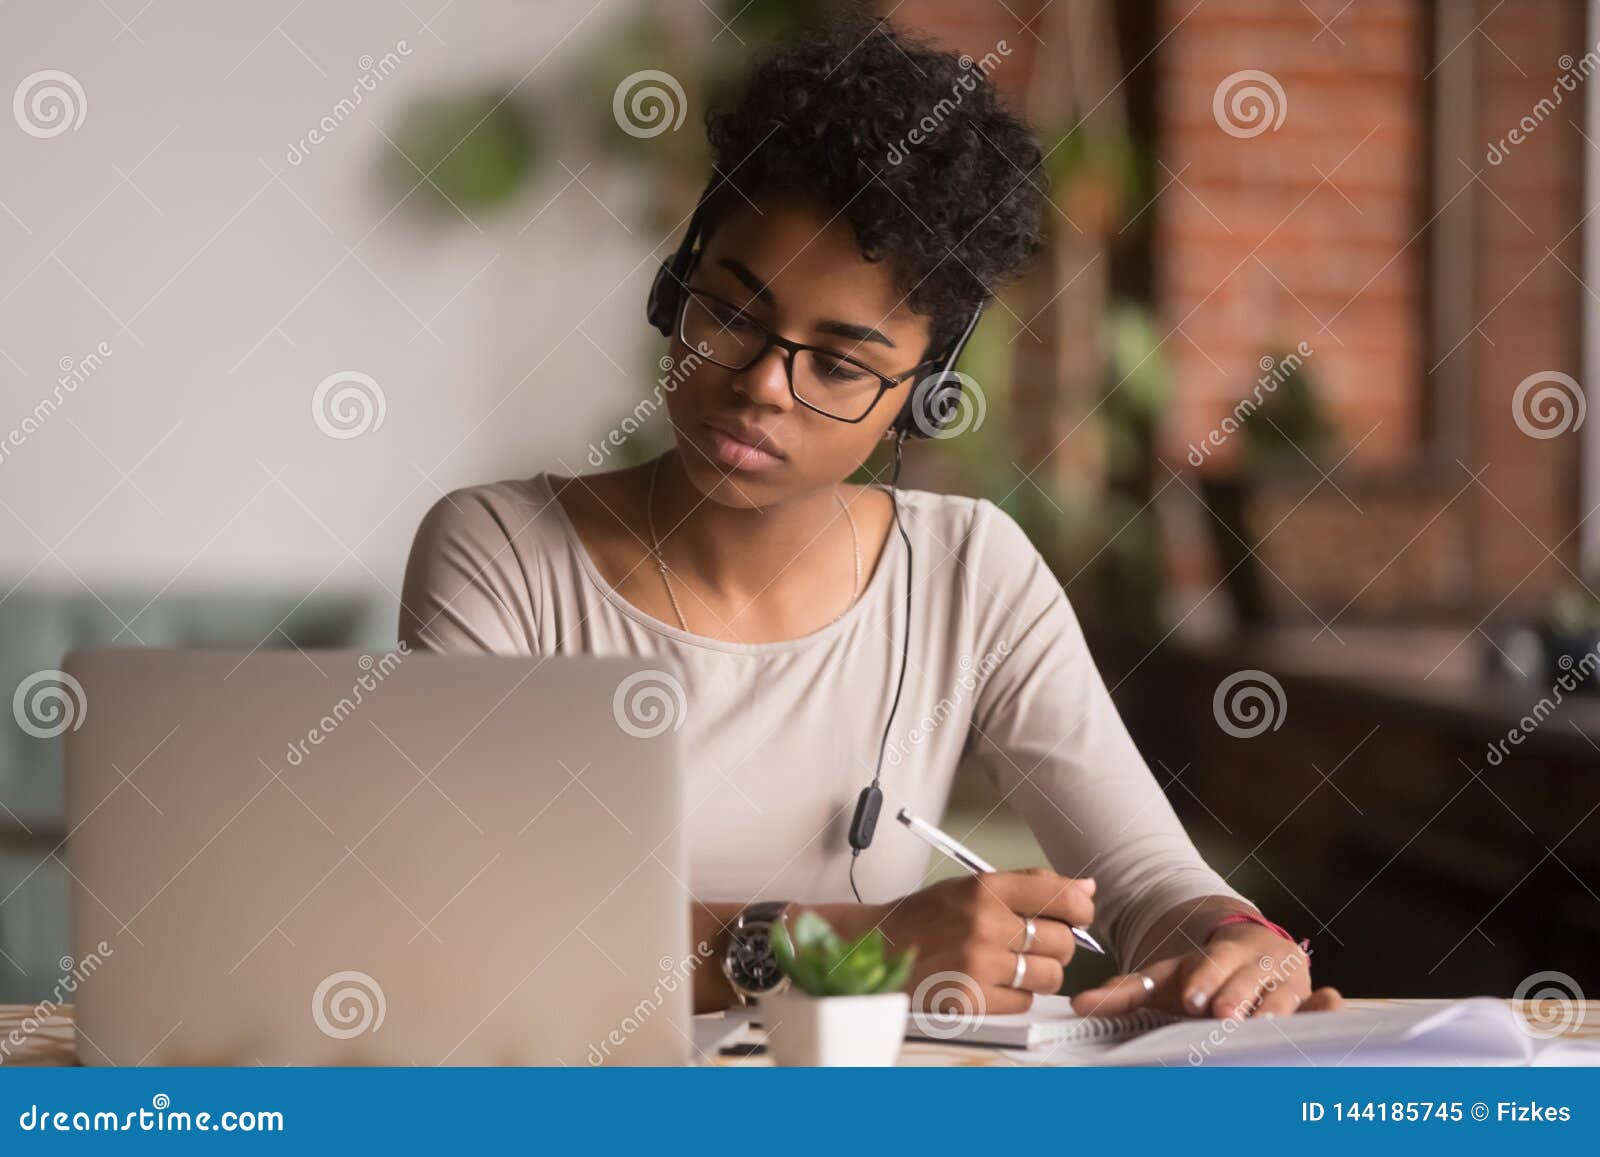 focused mixed race woman wearing headphones watching webinar write notes